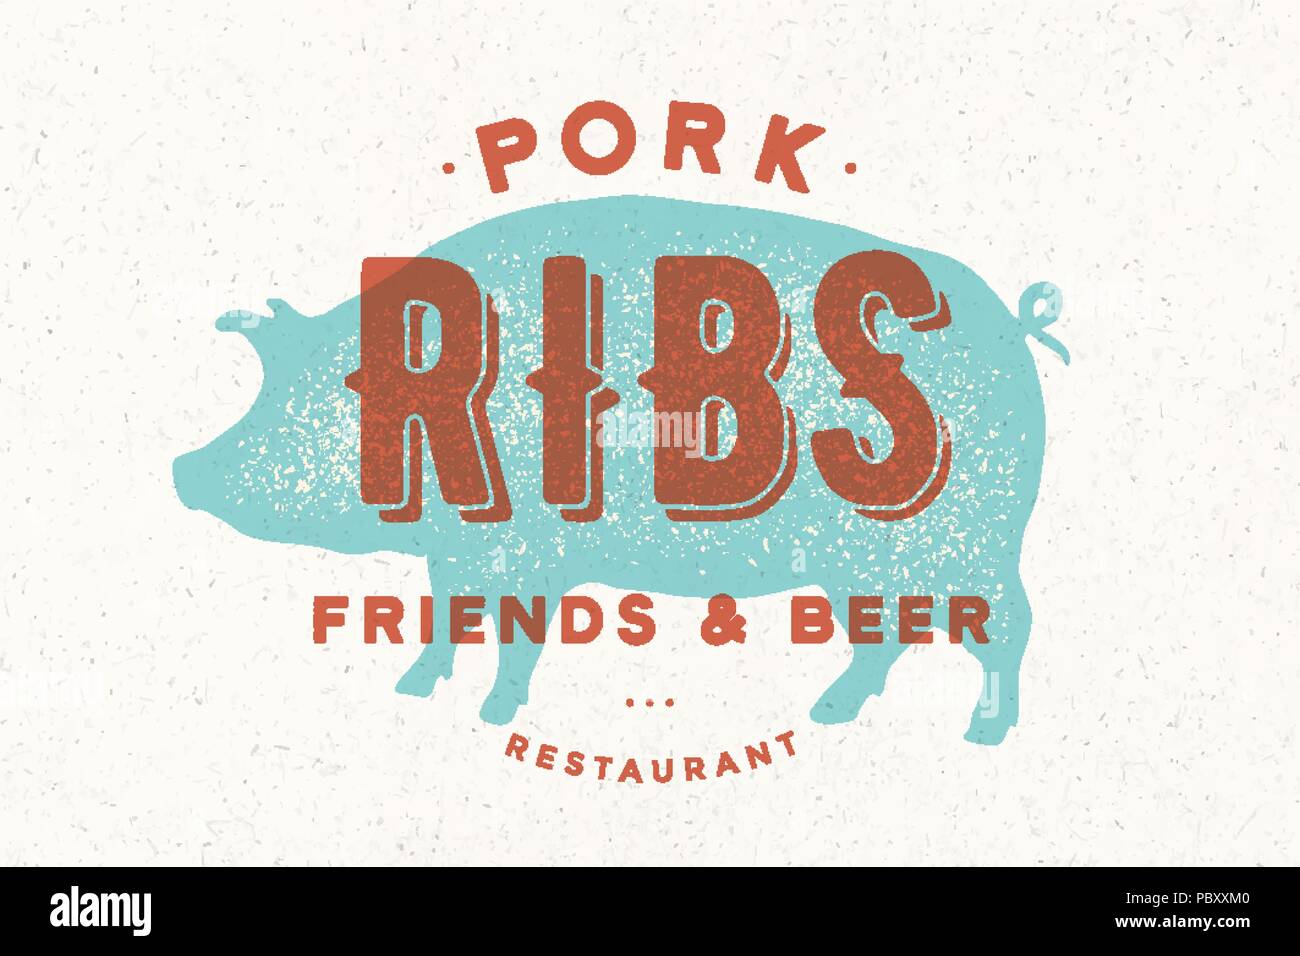 Pig, pork. Poster for restaurant Stock Vector